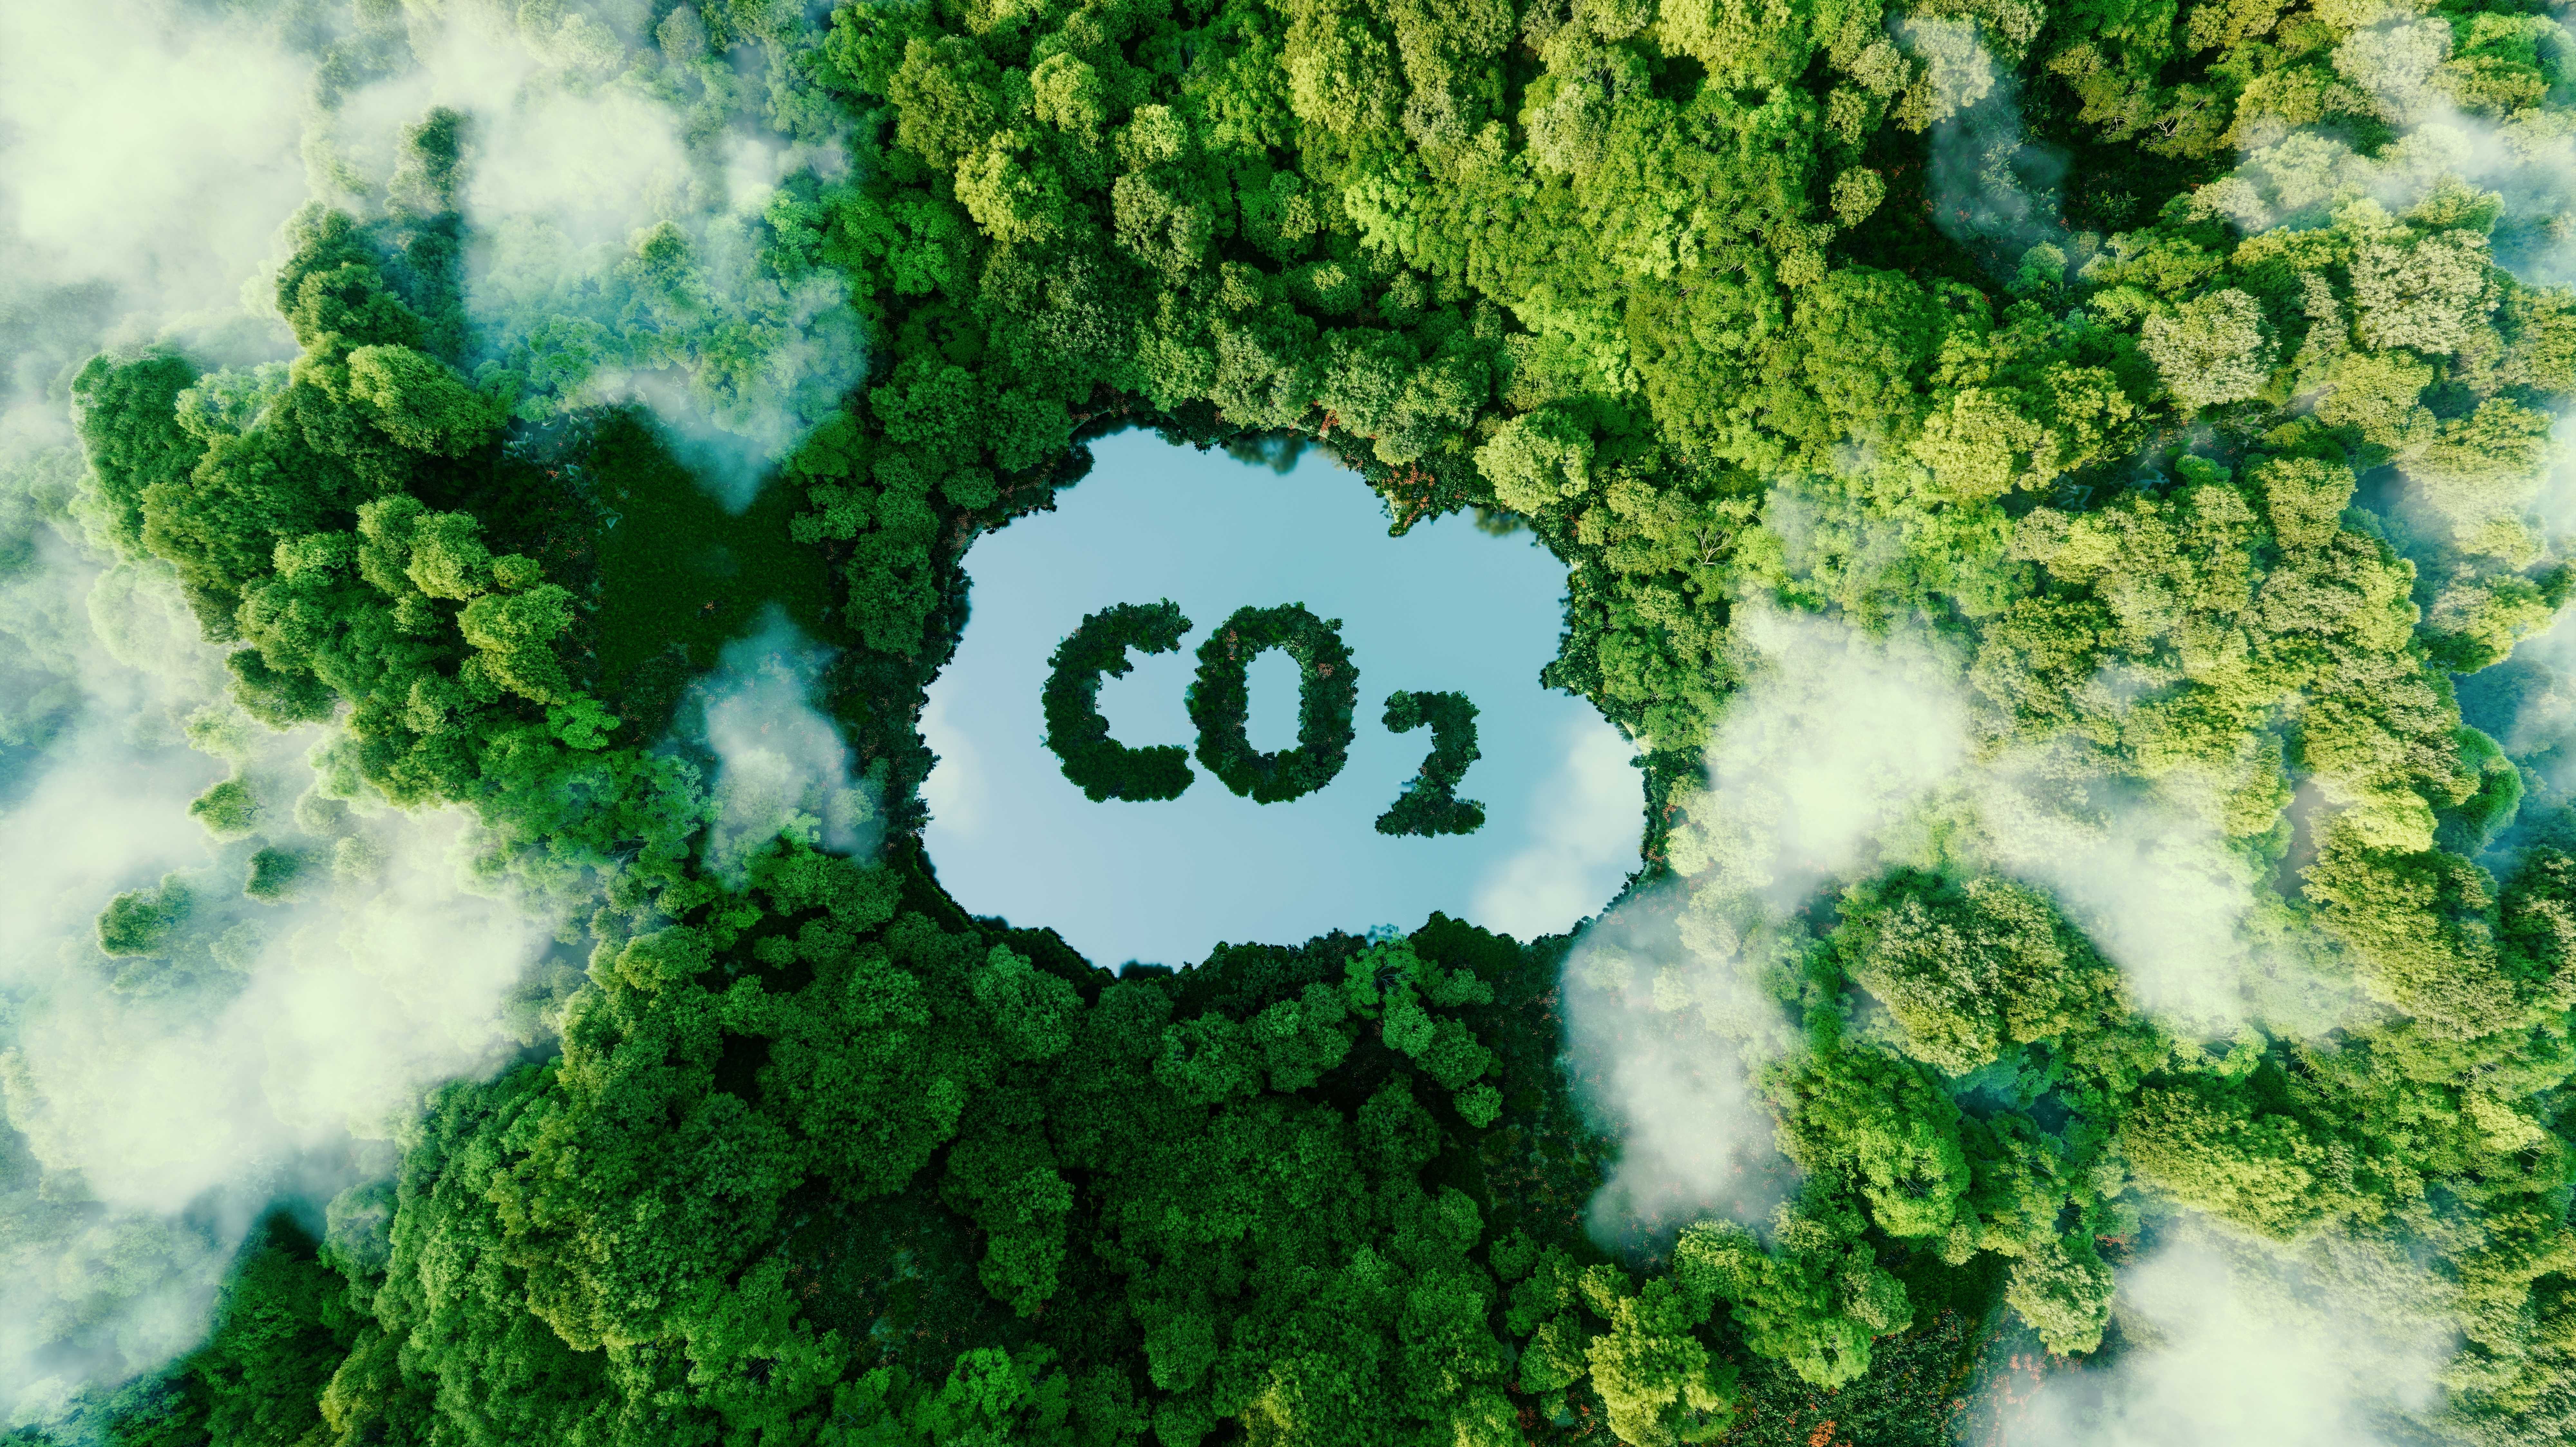 Darstellung der Kohlendioxidemissionen und ihrer Auswirkungen auf die Natur in Form eines Teiches in Form eines CO2-Symbols